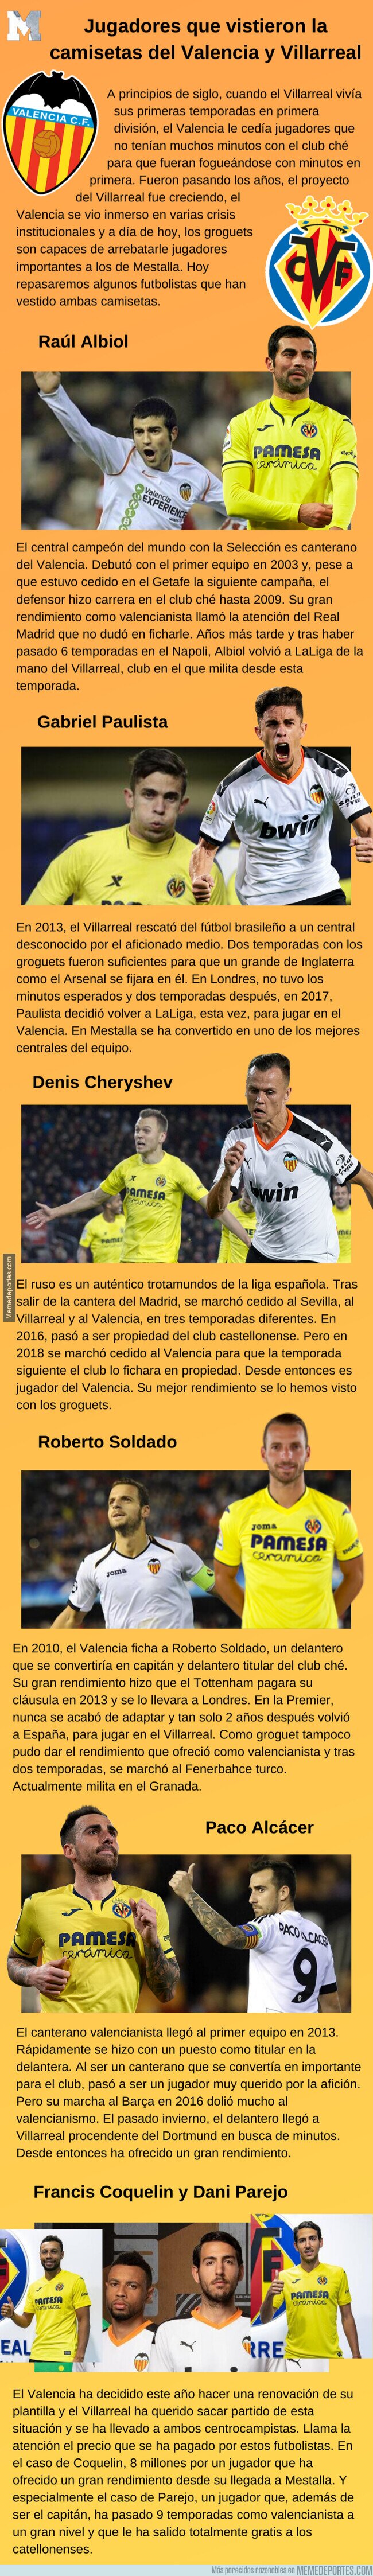 1112072 - Jugadores que vistieron las camisetas del Valencia y Villarreal